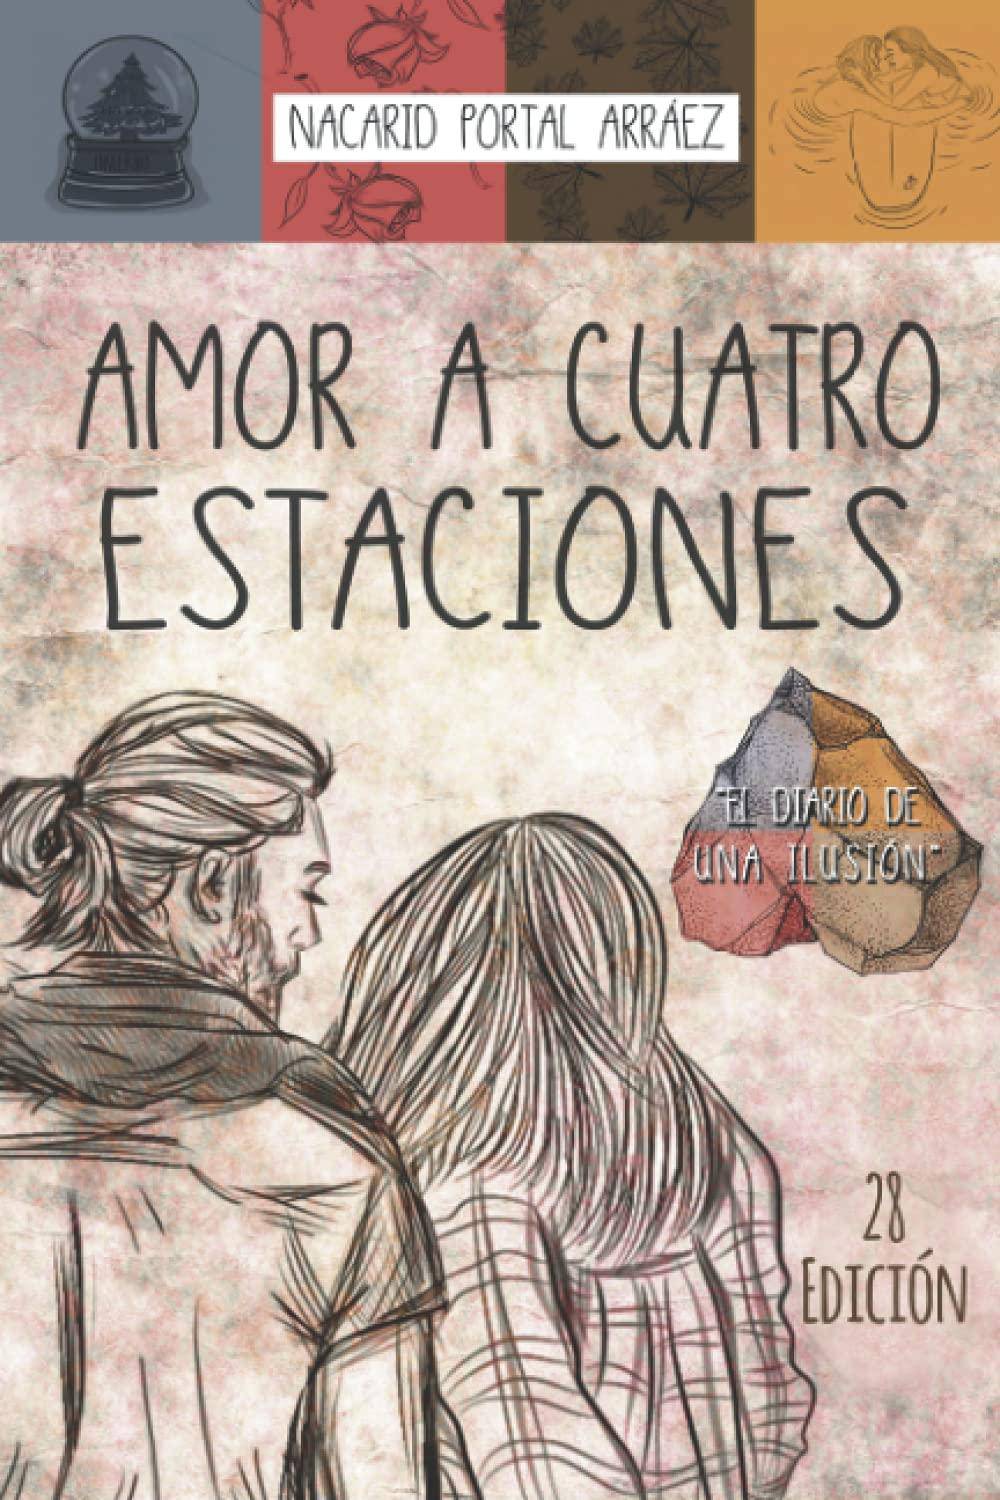 Amor A Cuatro Estaciones - SureShot Books Publishing LLC